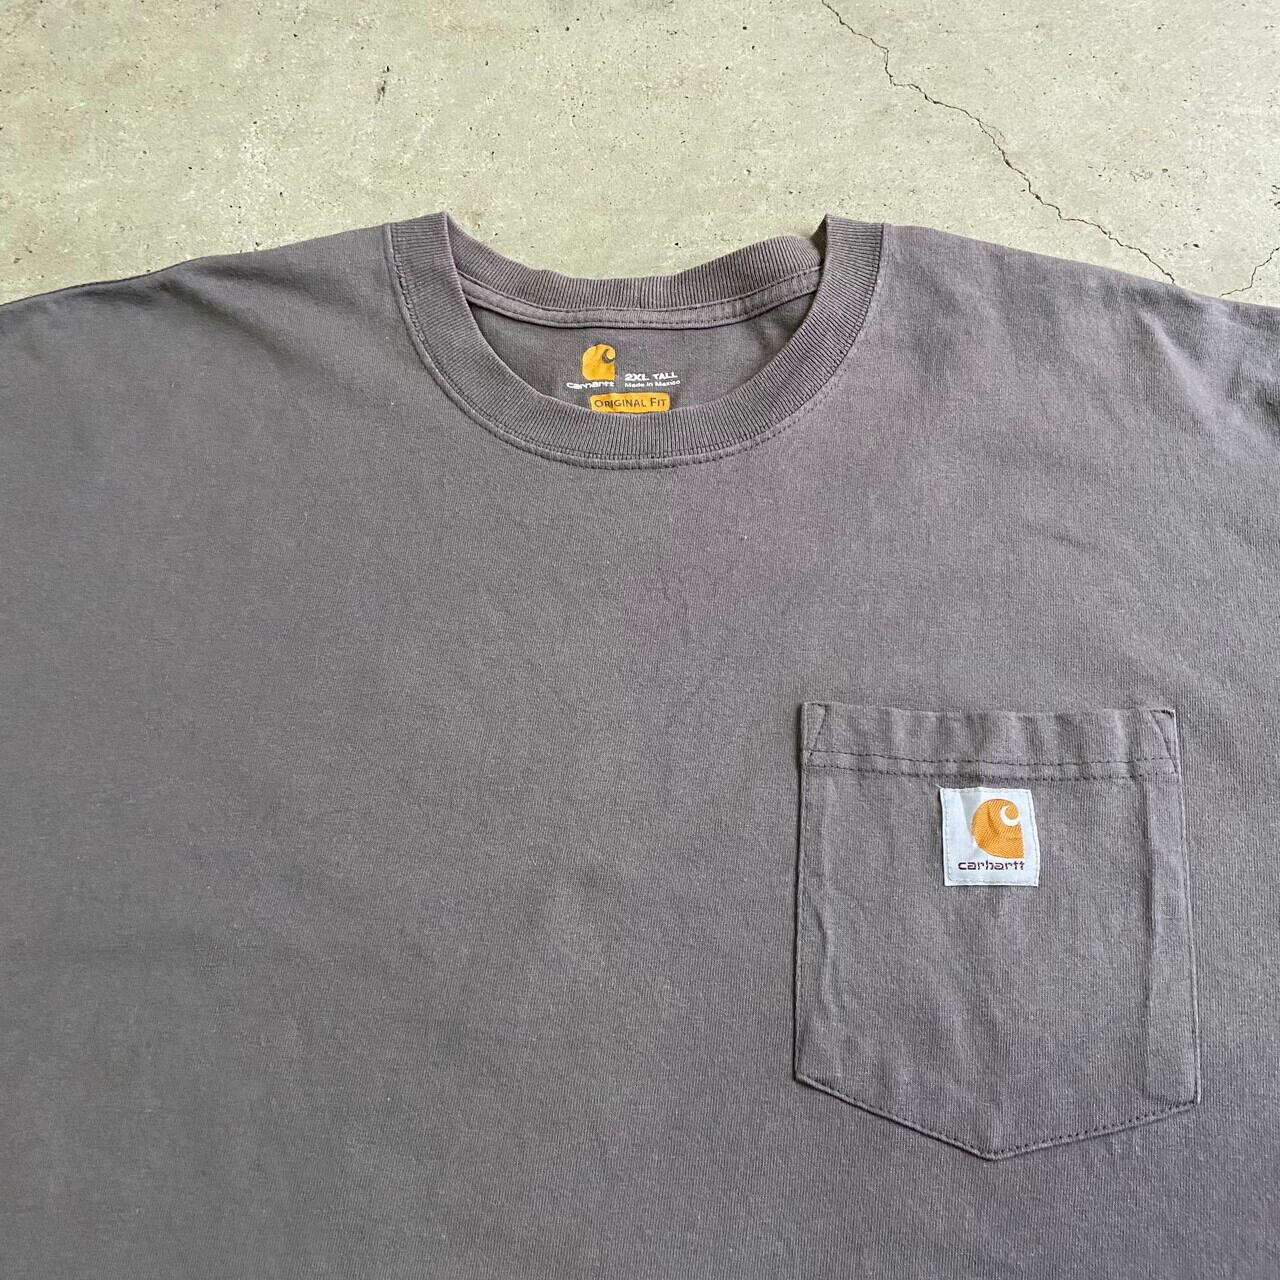 Carhartt カーハート Tシャツ 半袖 ワンポイント ビッグサイズ 4XL